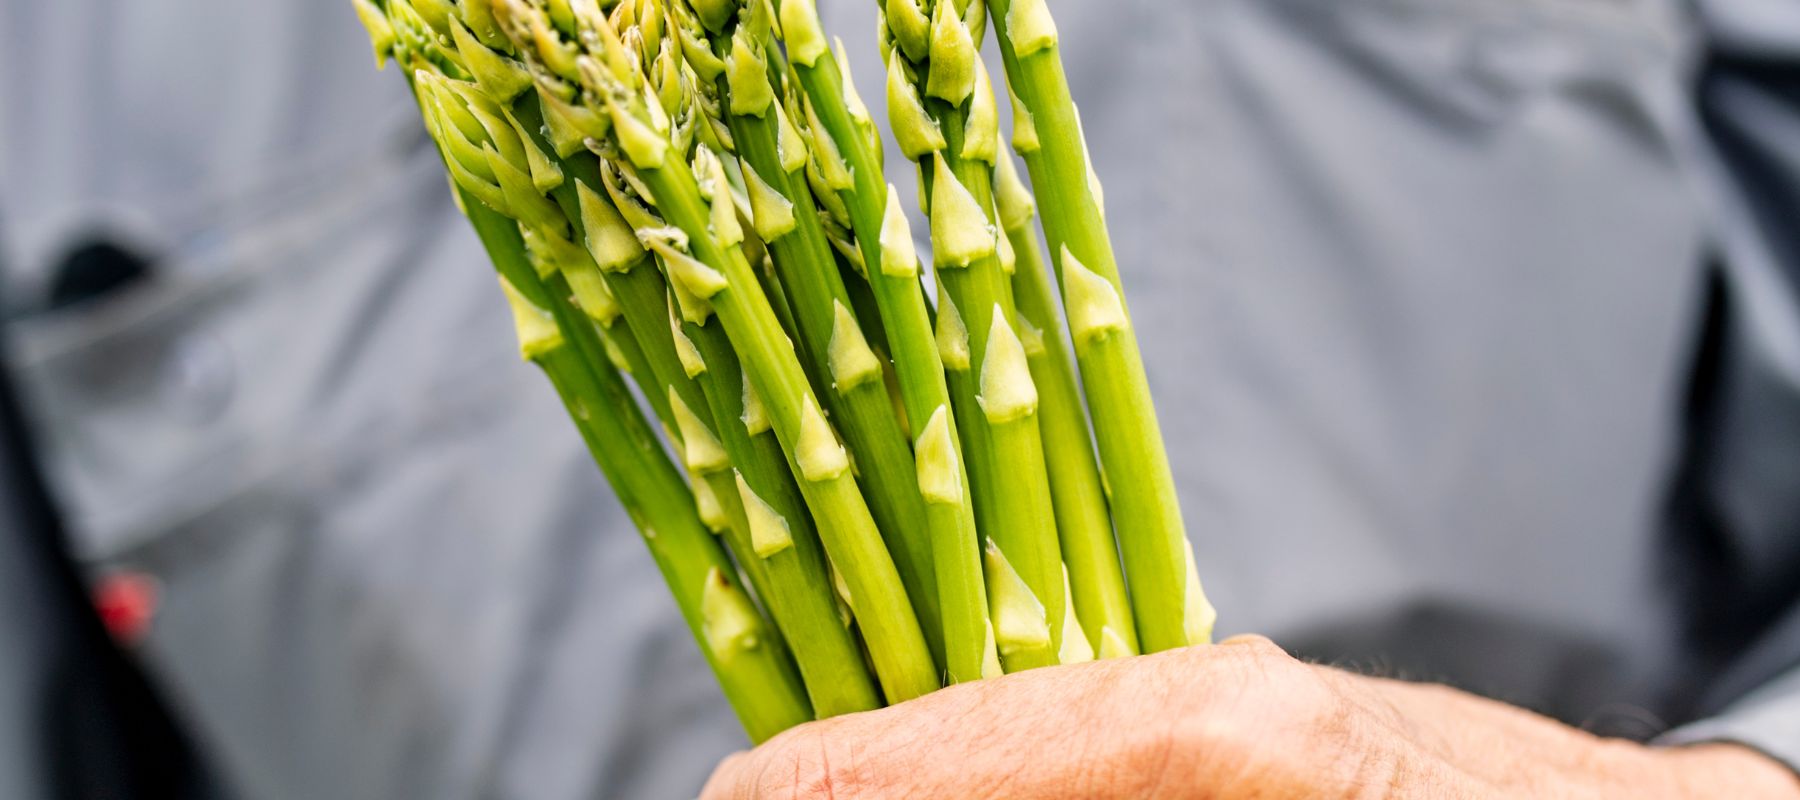 Asparagus harvest tips